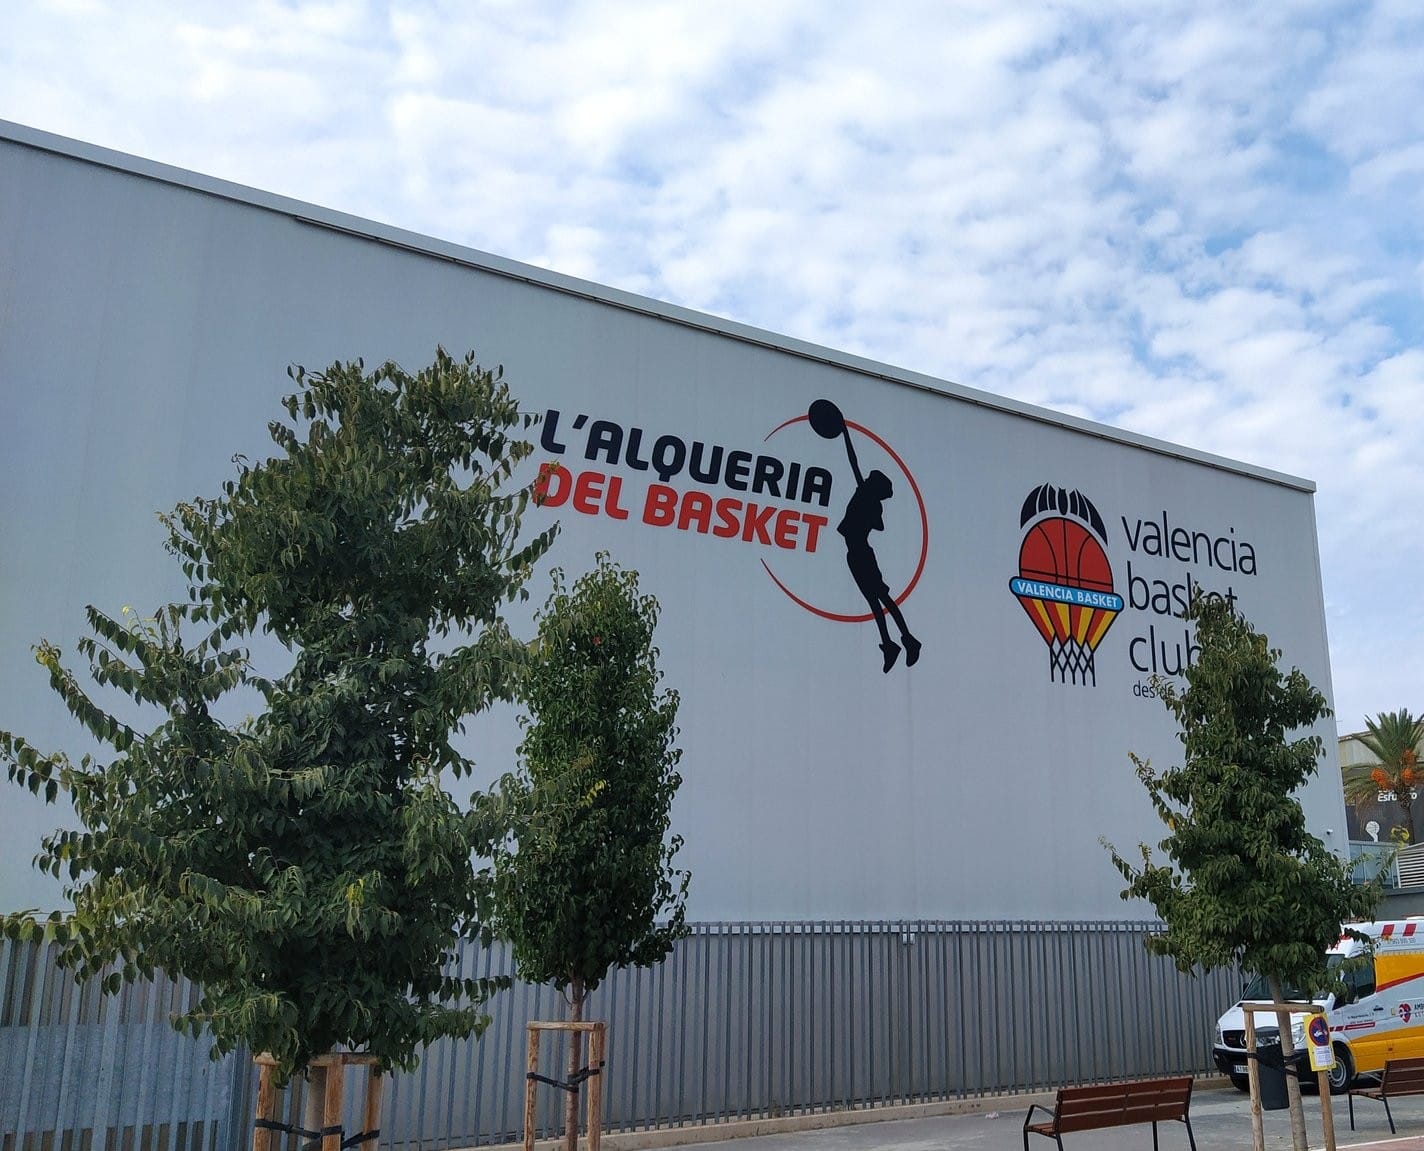 NACIONAL DE BASKET, VALENCIA                                       (OCTUBRE 2021), EN UNA DE LAS MEJORES INSTALACIONES DE EUROPA JUGARON LOS CHICOS DE NHL.